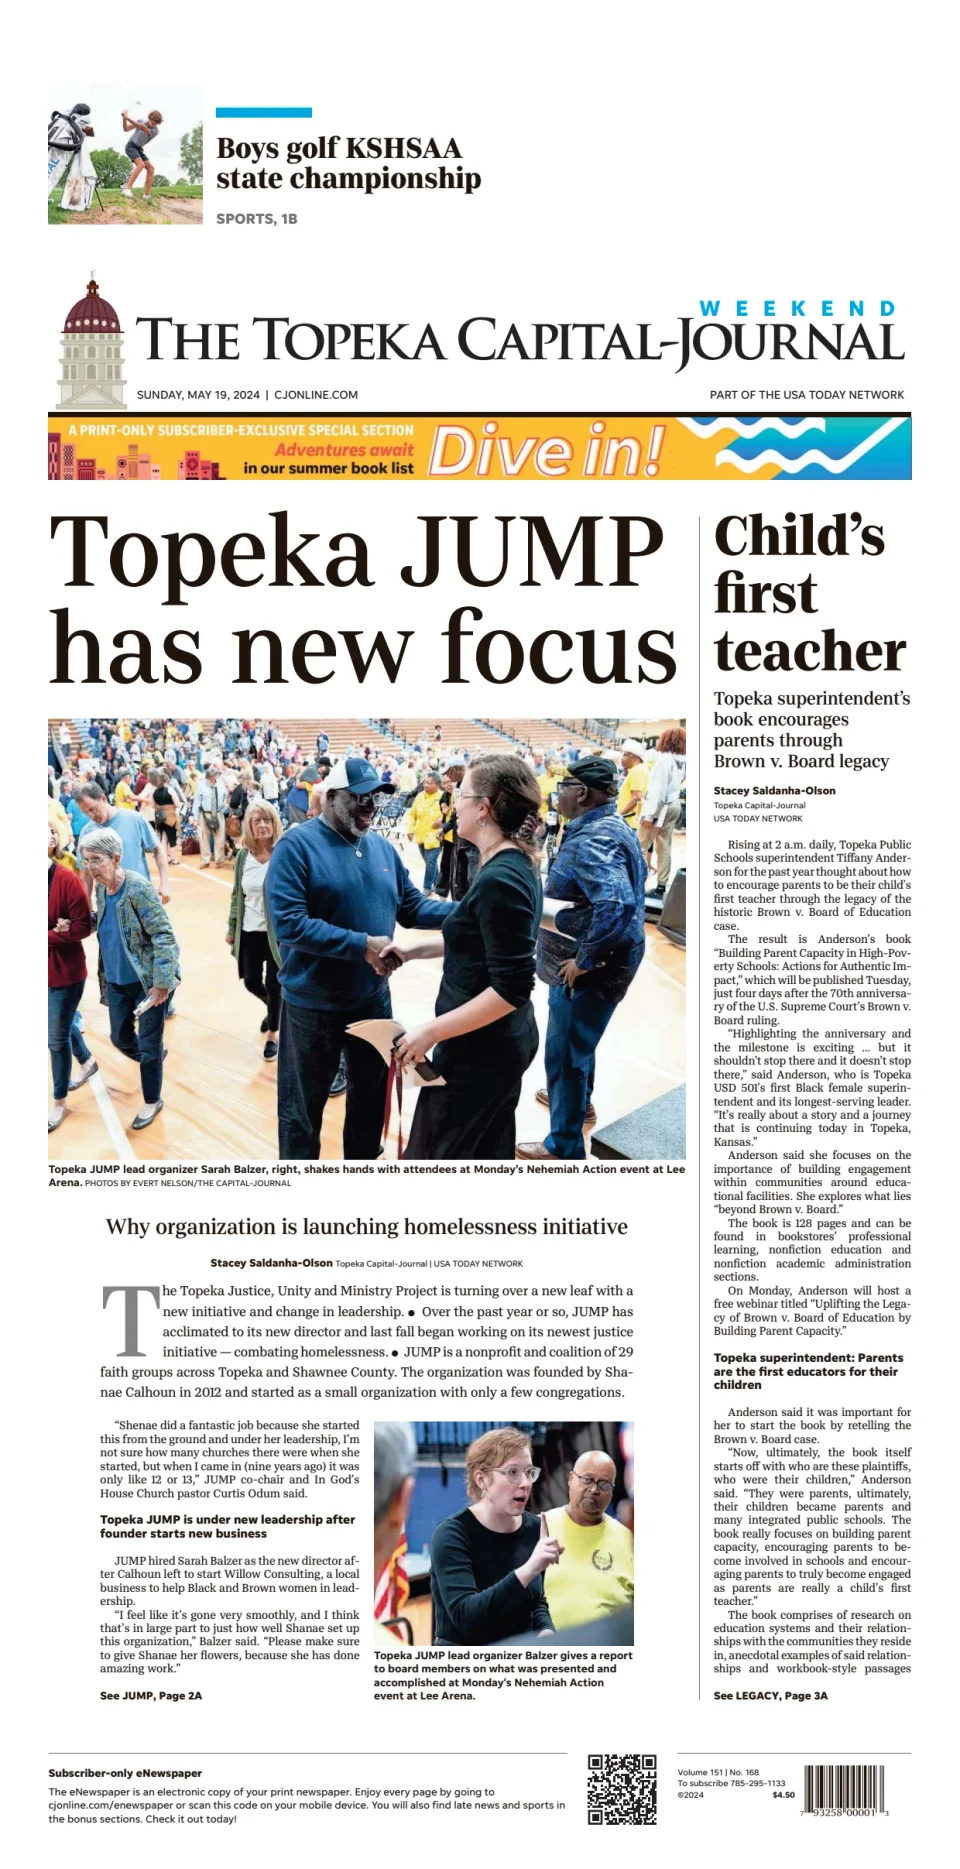 The Topeka Capital-Journal